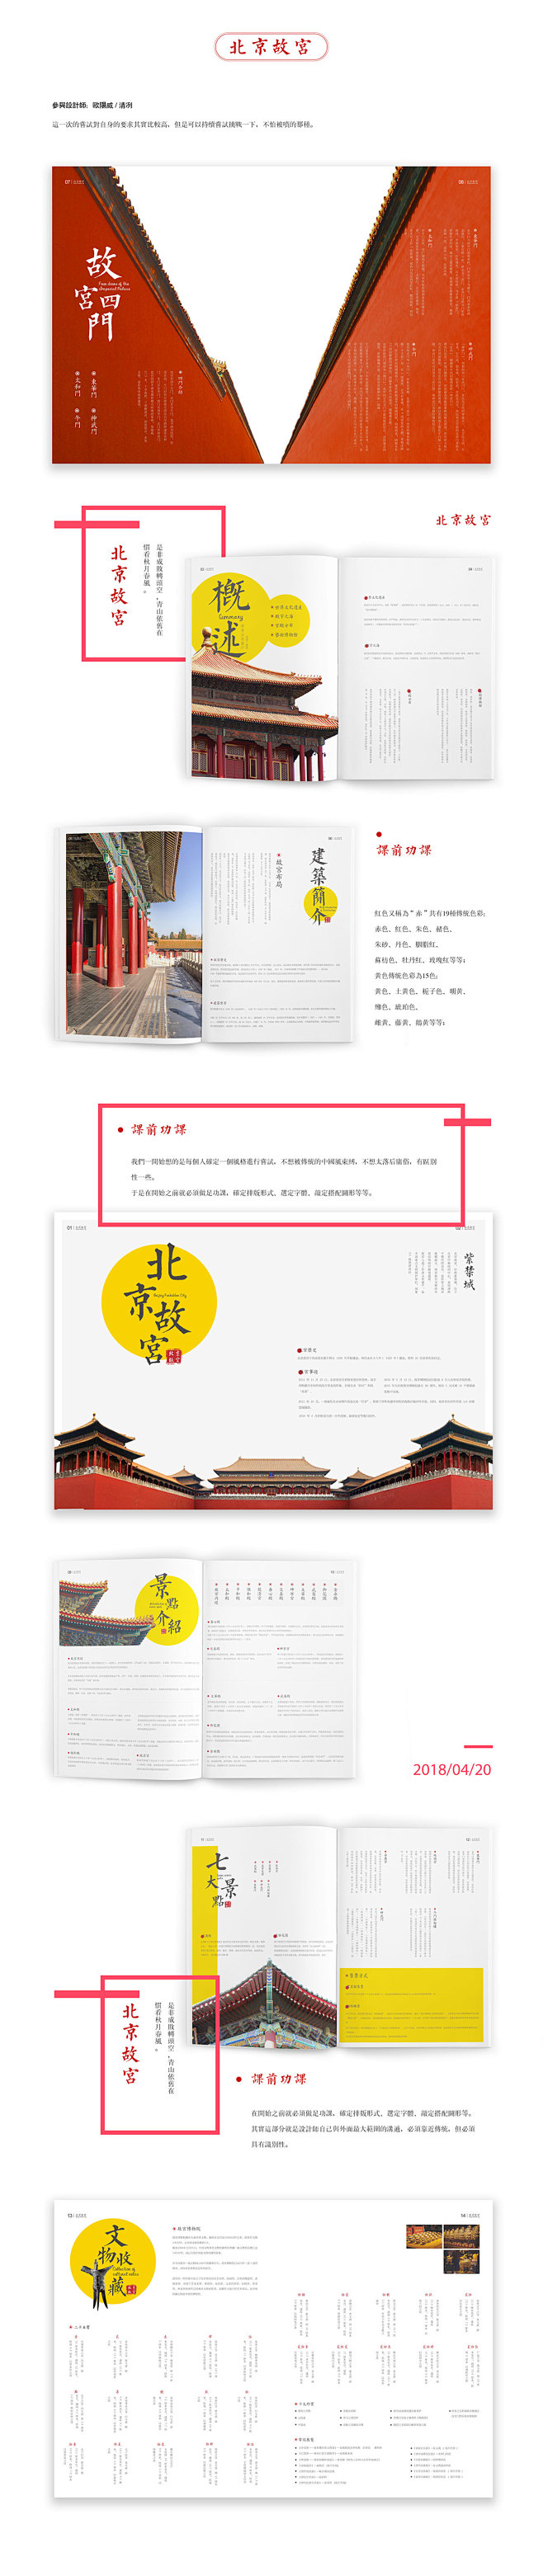 故宫画册设计提案｜8个稿件展示 : 中国...